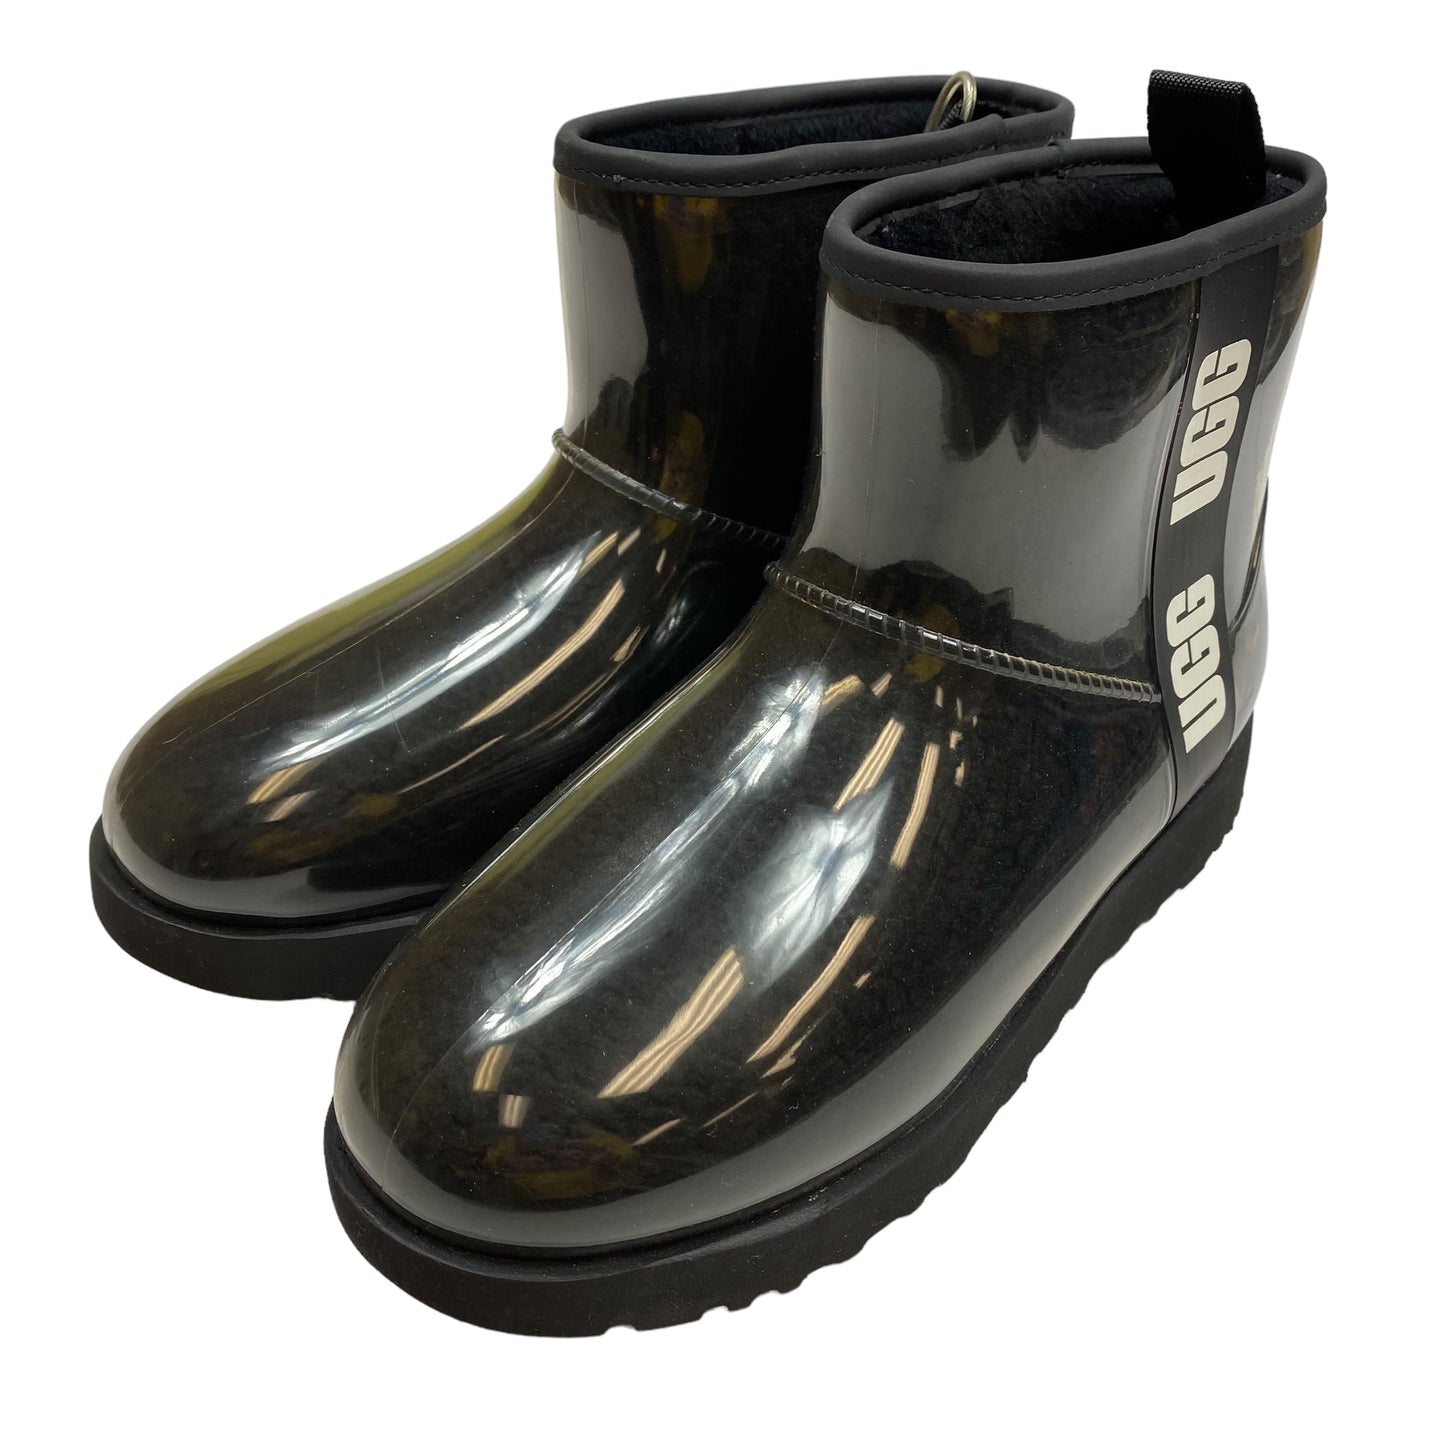 Black Boots Designer Ugg, Size 10